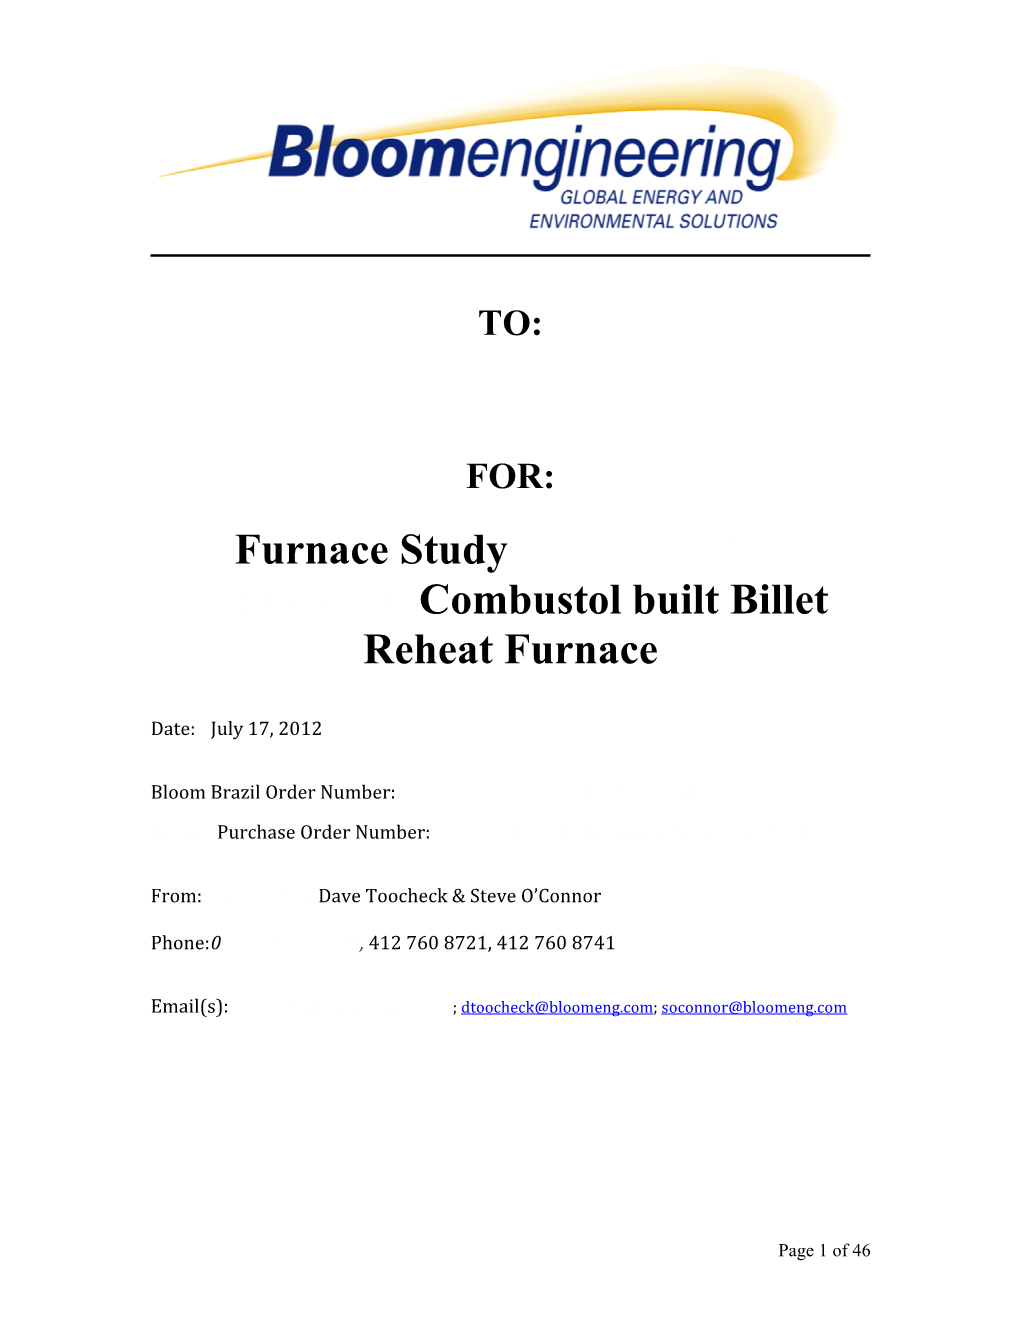 Furnace Study Arcelor Mittal Monlevade, Combustol Built Billet Reheat Furnace